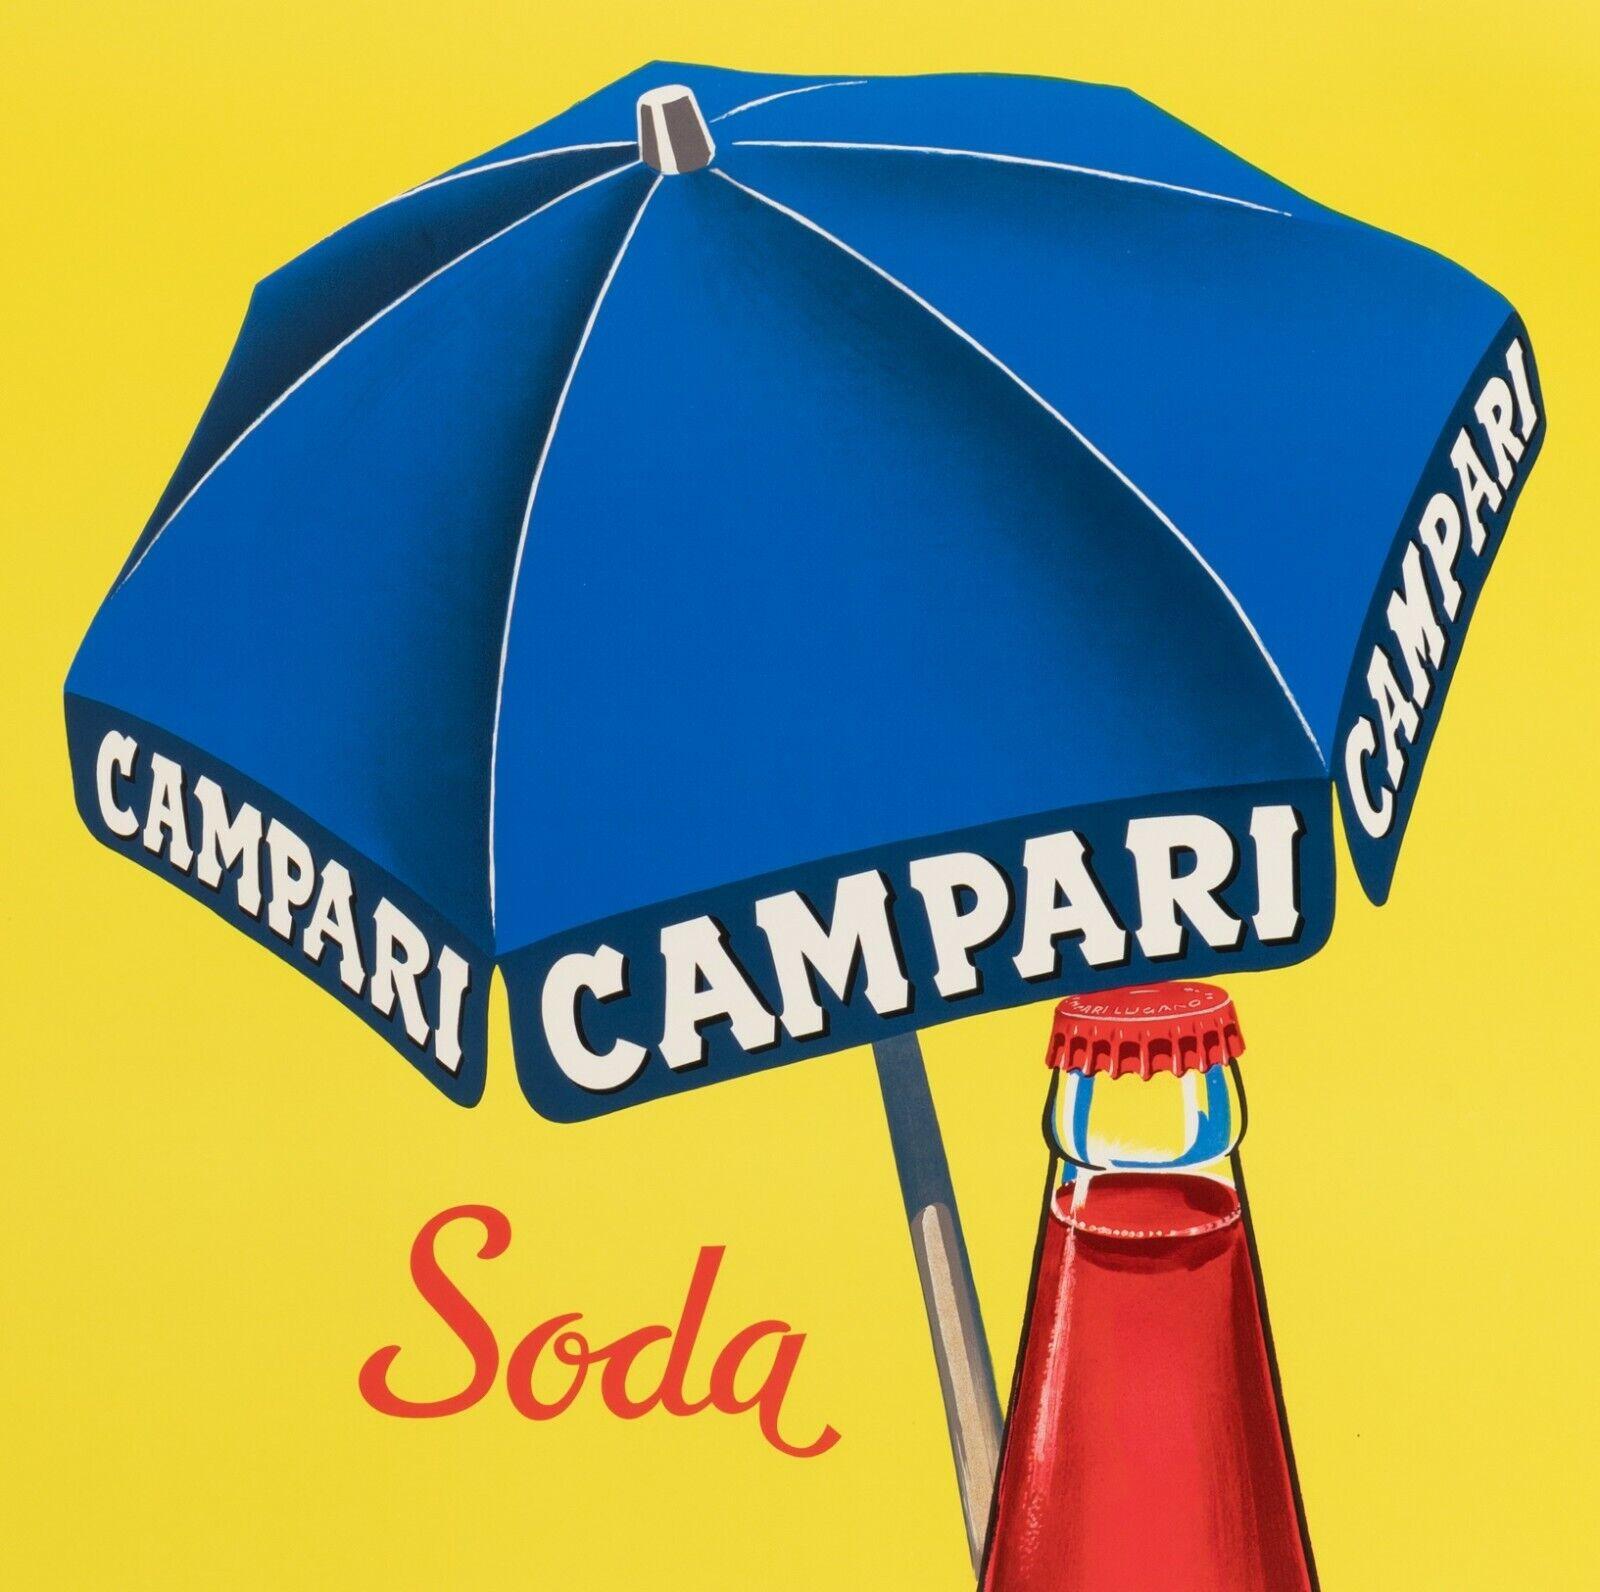 Affiche originale vintage-Campari Soda Disseta-Plage-Milano-Liqueur, 1970

Campari Soda s'hydrate à l'ombre d'un parapluie sur une plage.
Campari est une société italienne, fondée à Milan en 1860, qui produit un amaro rouge vif, parfumé à